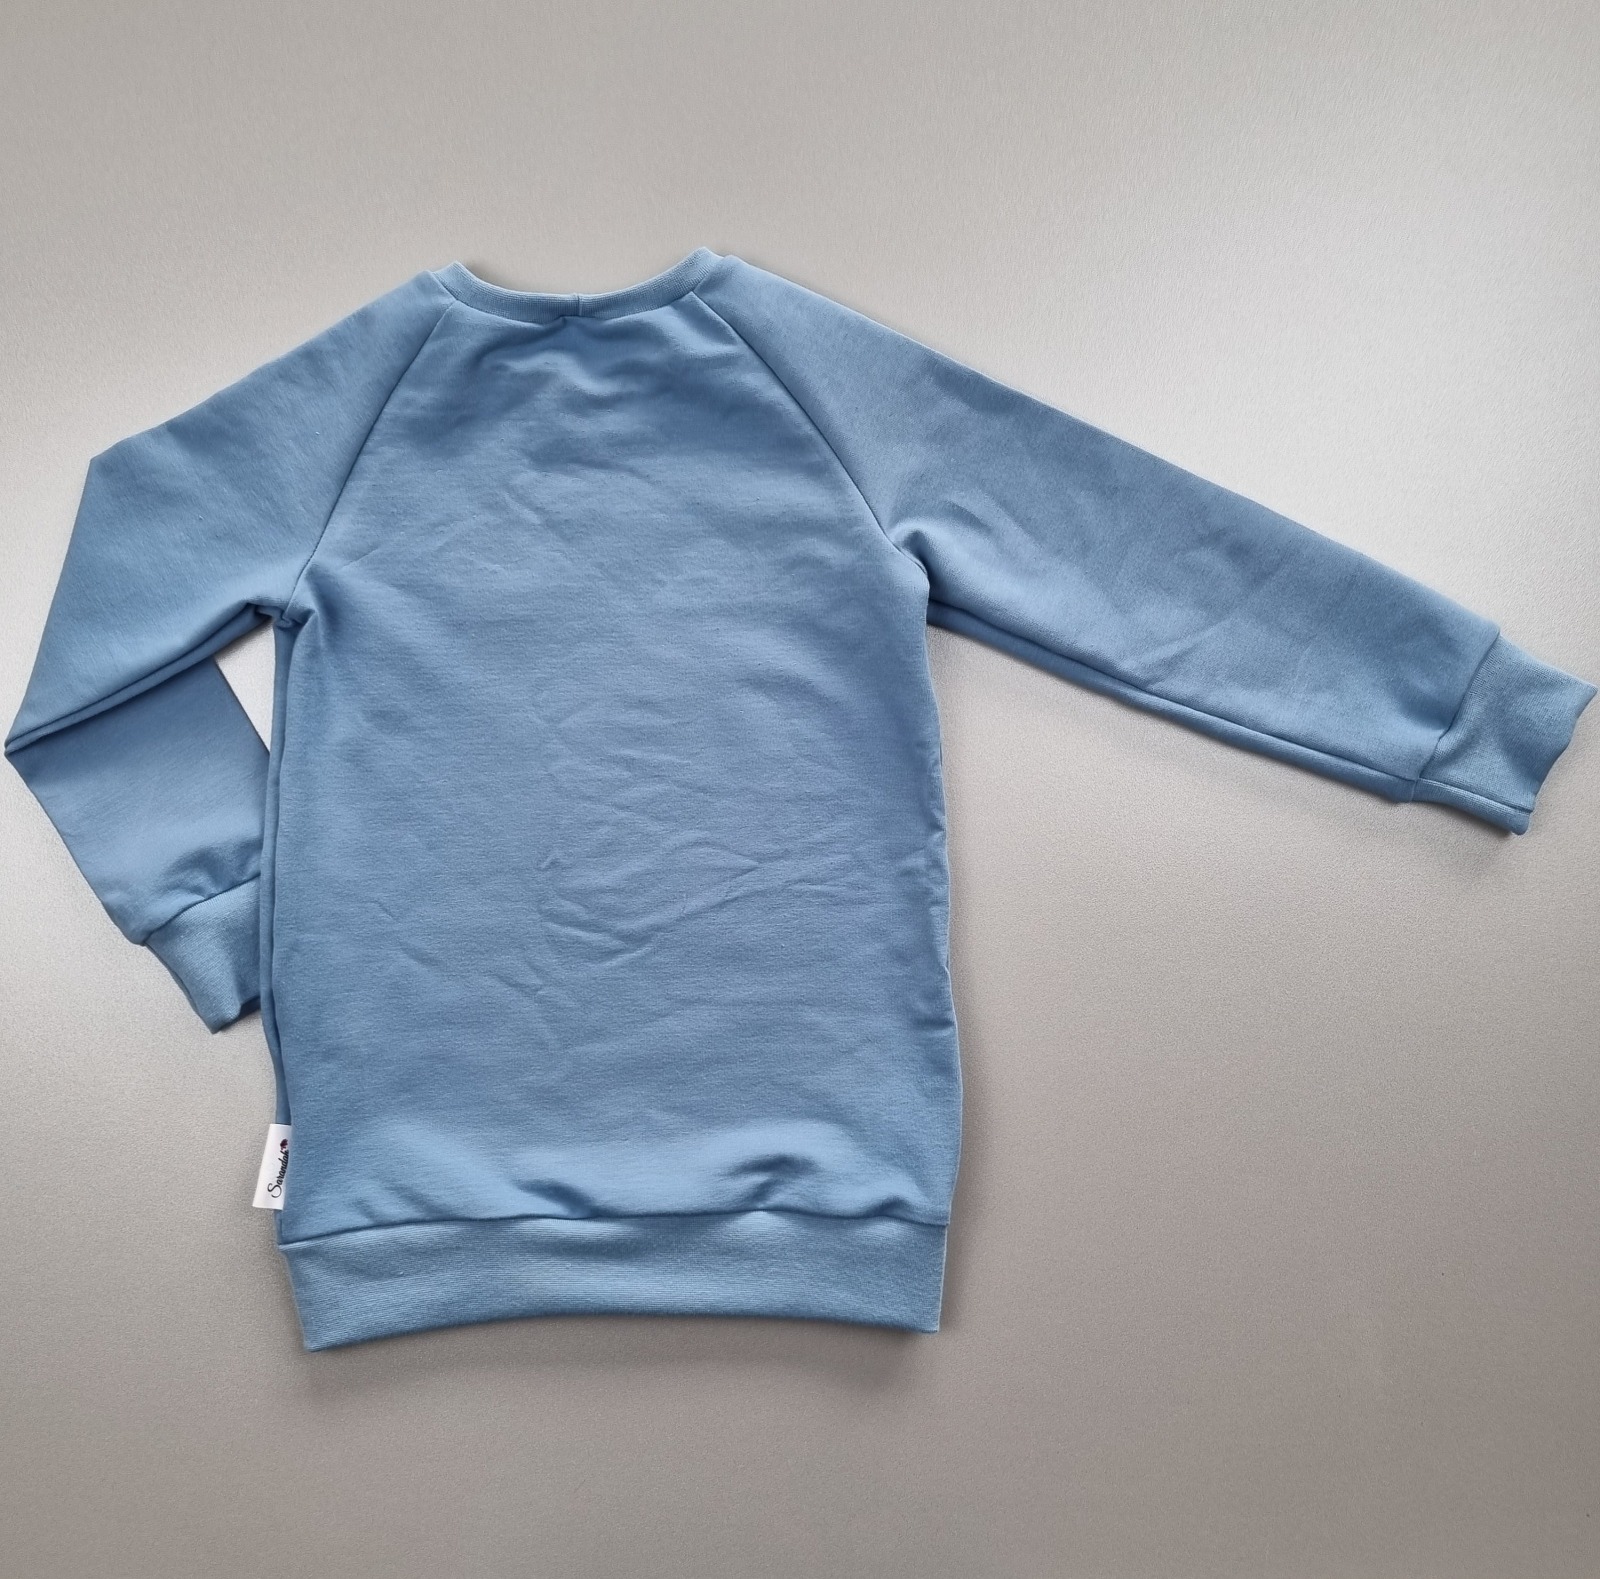 Pullover mit Applikation, Geburtstagspullover, verschieden Farben, in Wunschgröße mit oder ohne